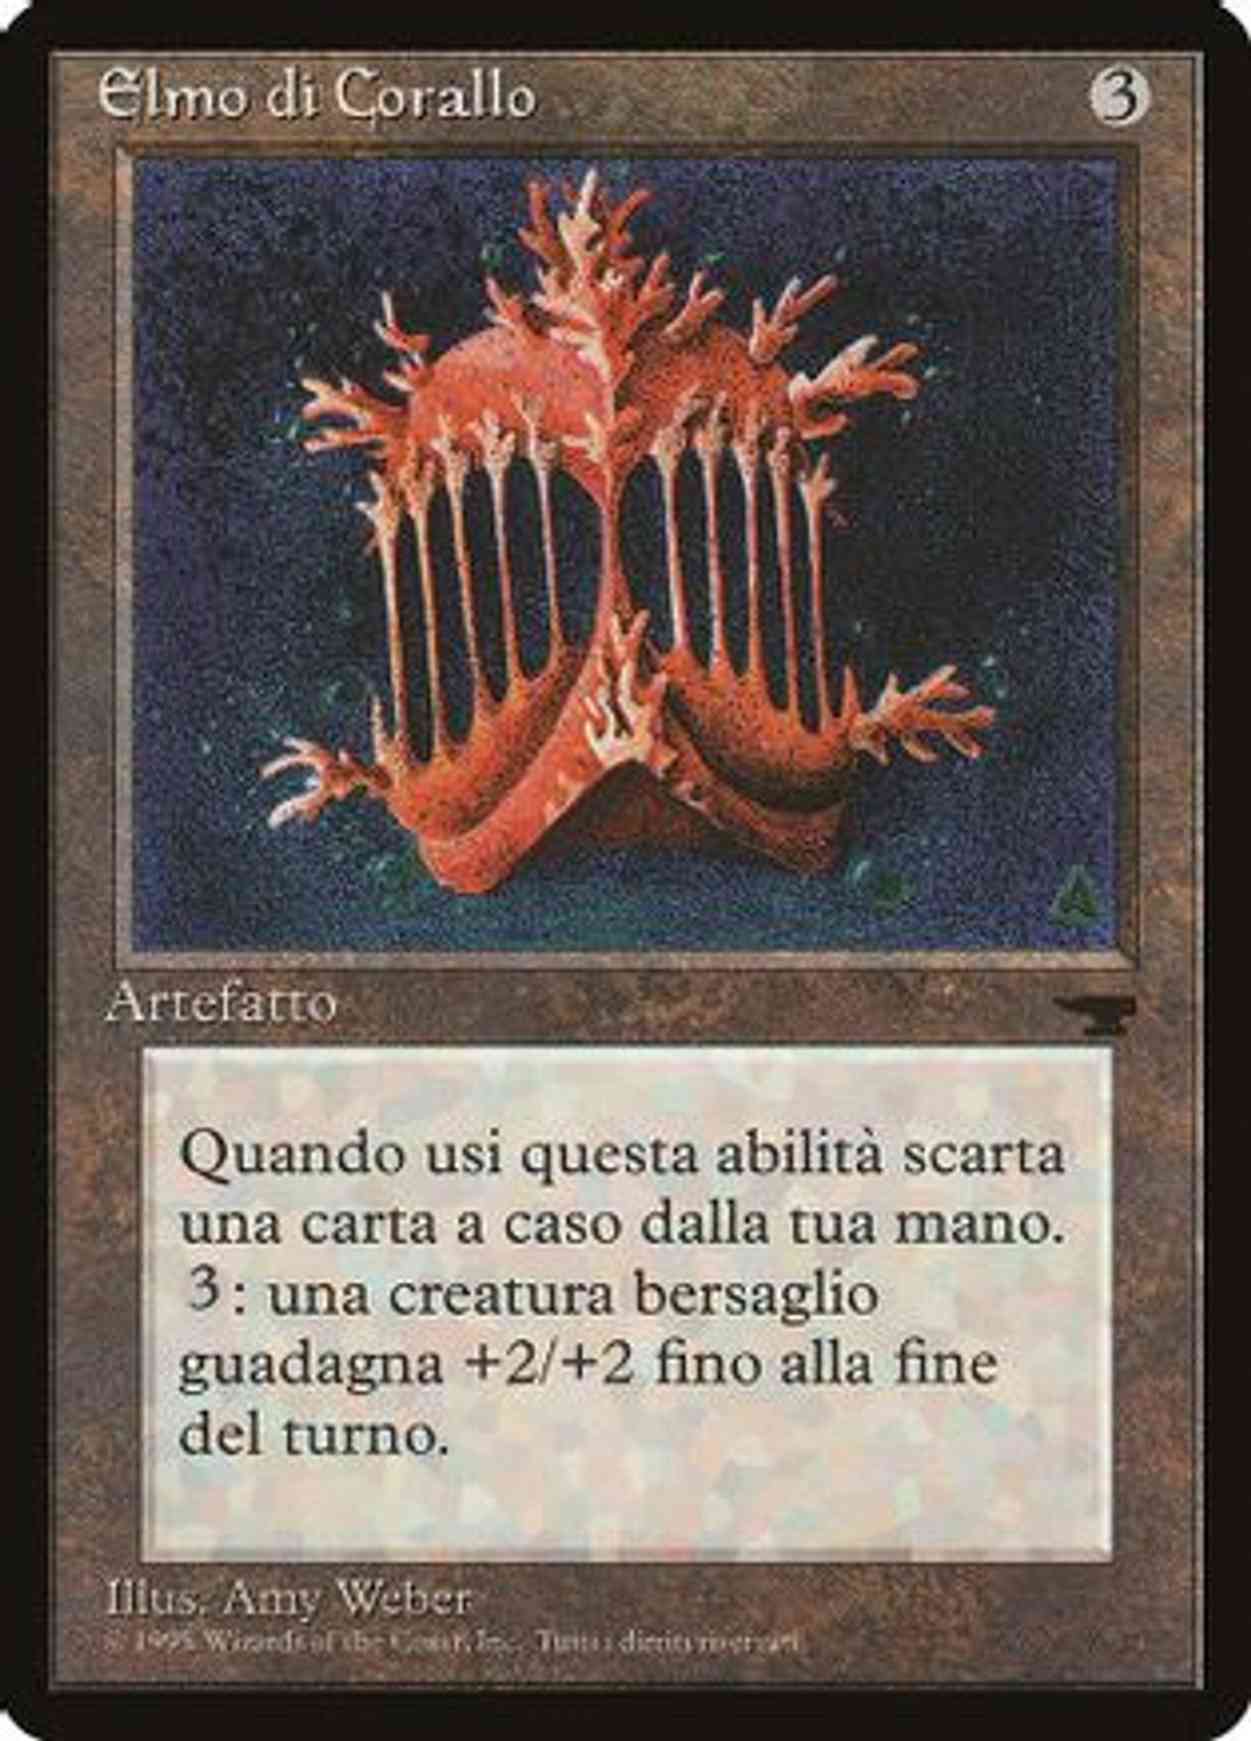 Coral Helm (Italian) - "Elmo di Corallo" magic card front